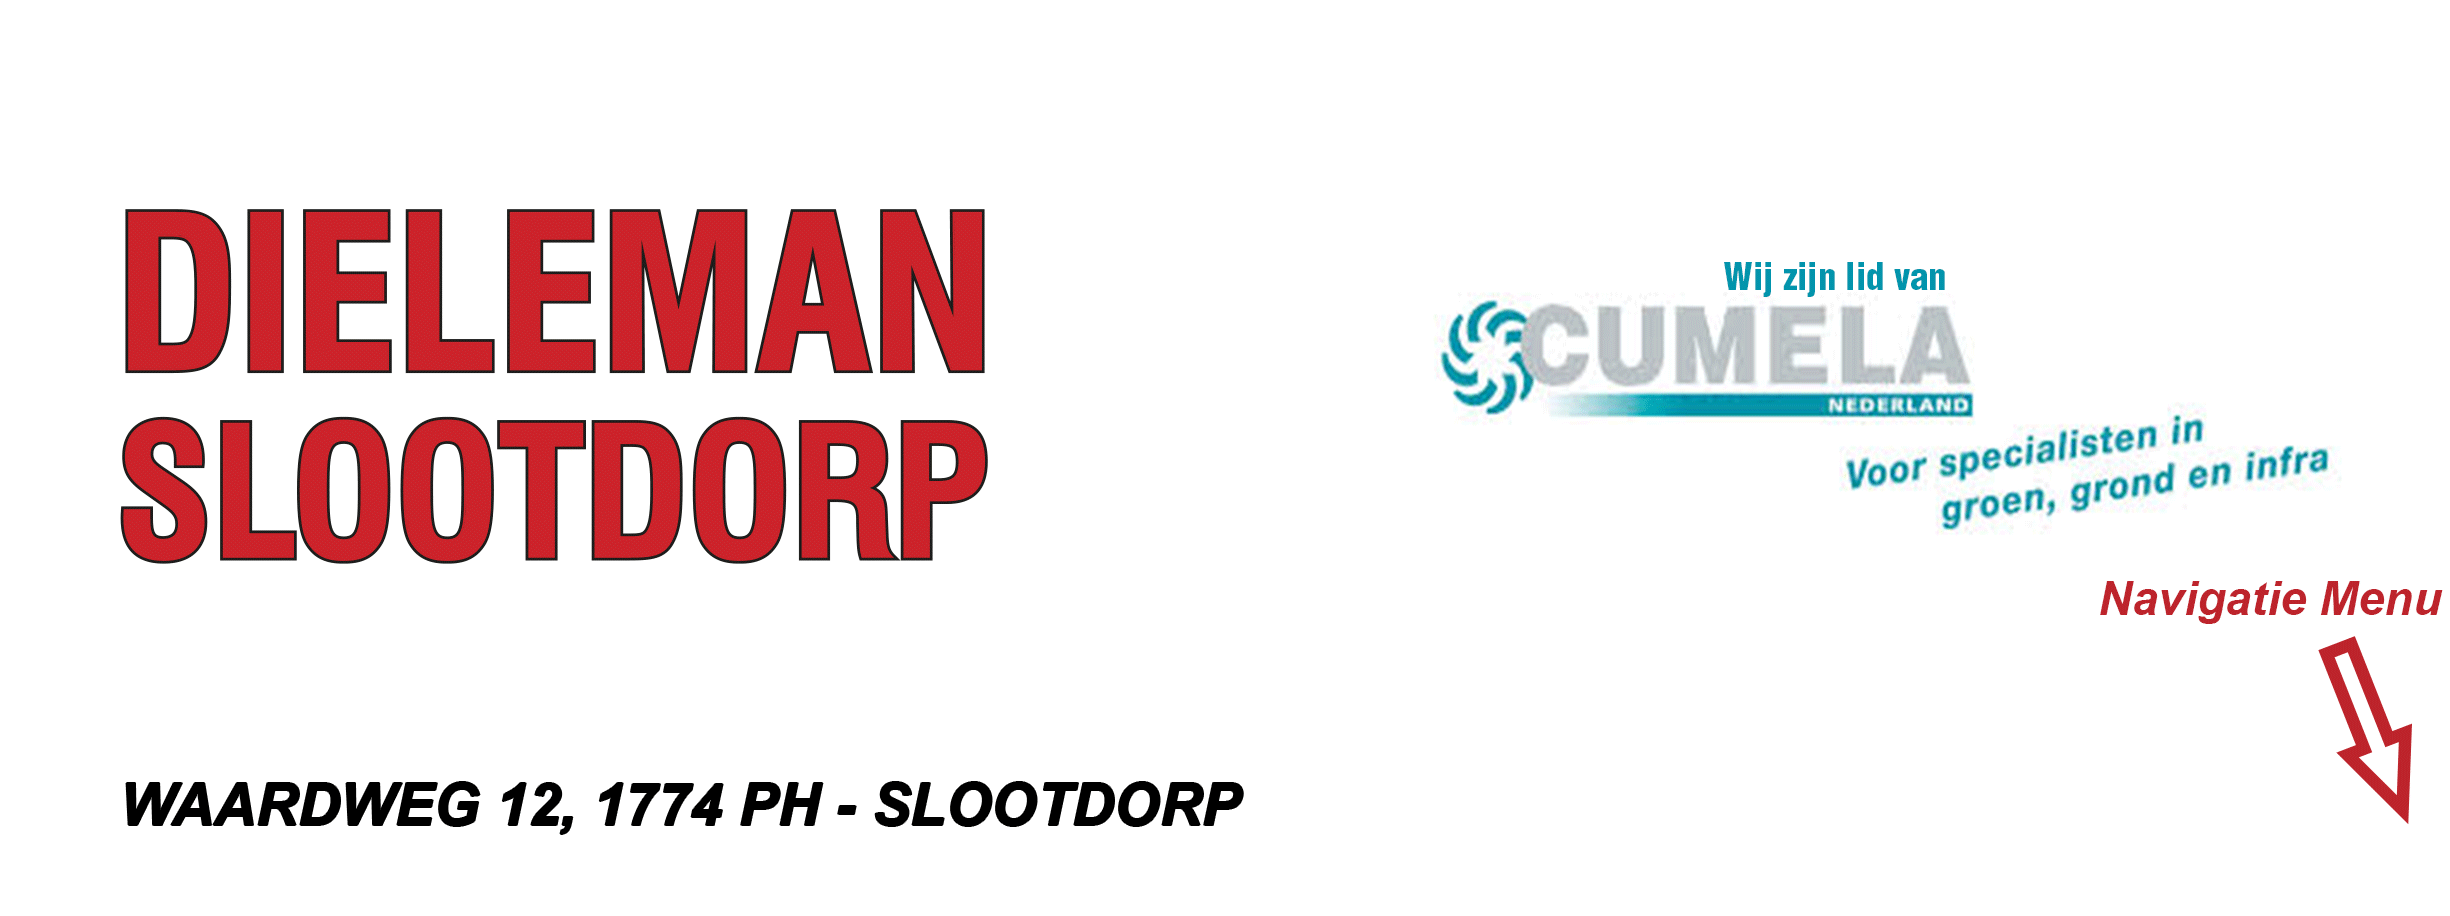 Dieleman Slootdorp Logo